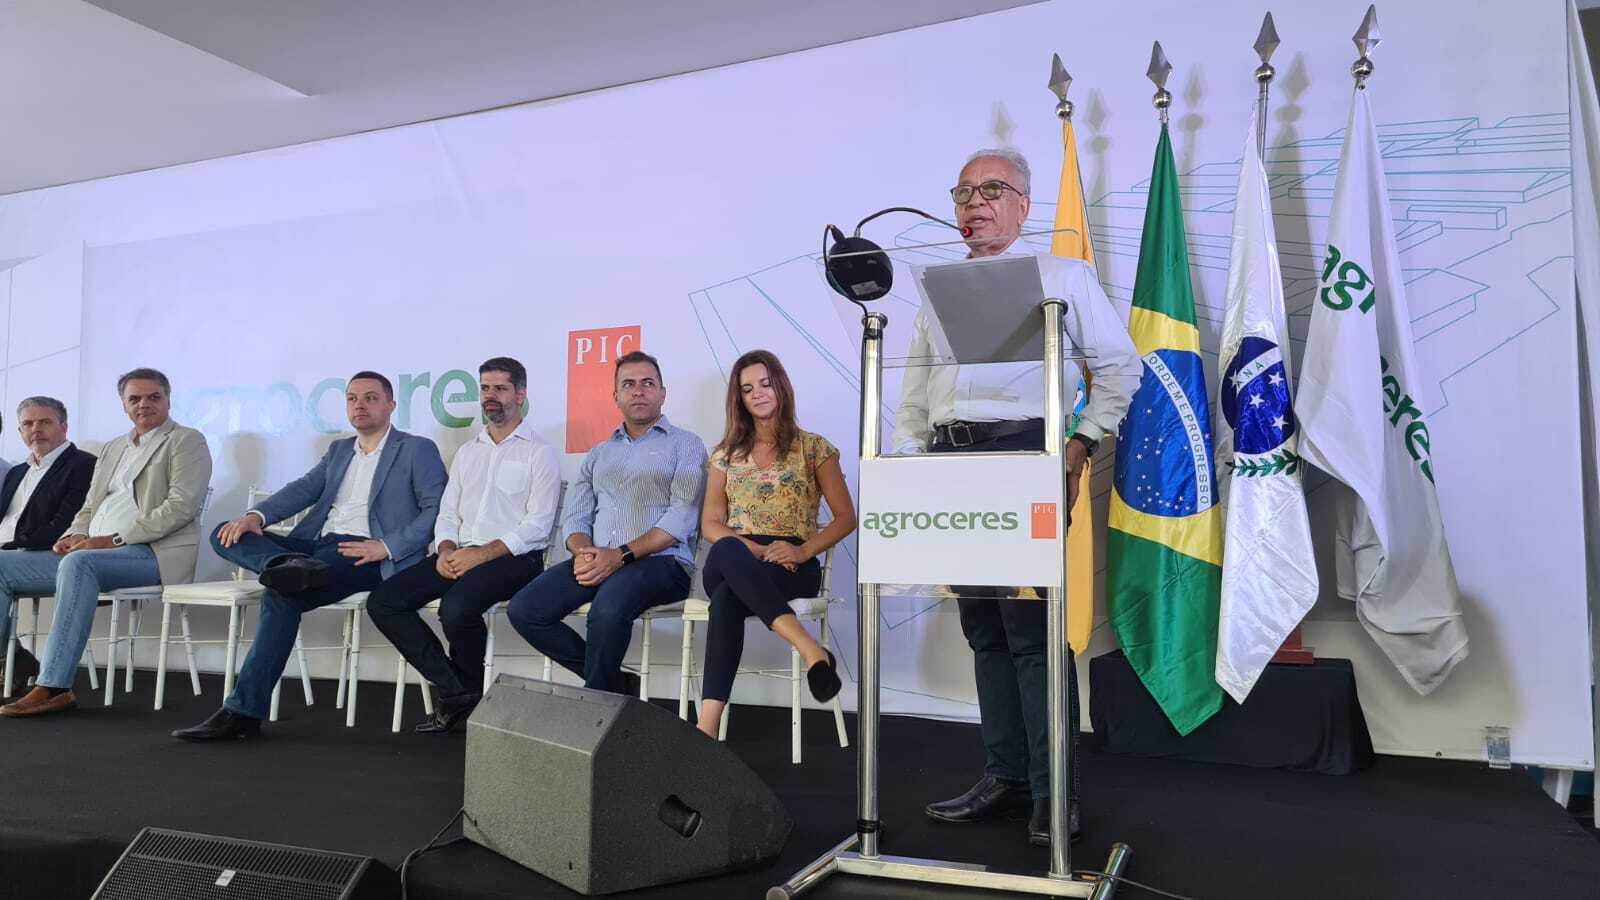 Paranavaí recebe núcleo de genética suína com investimento de R$ 332 milhões